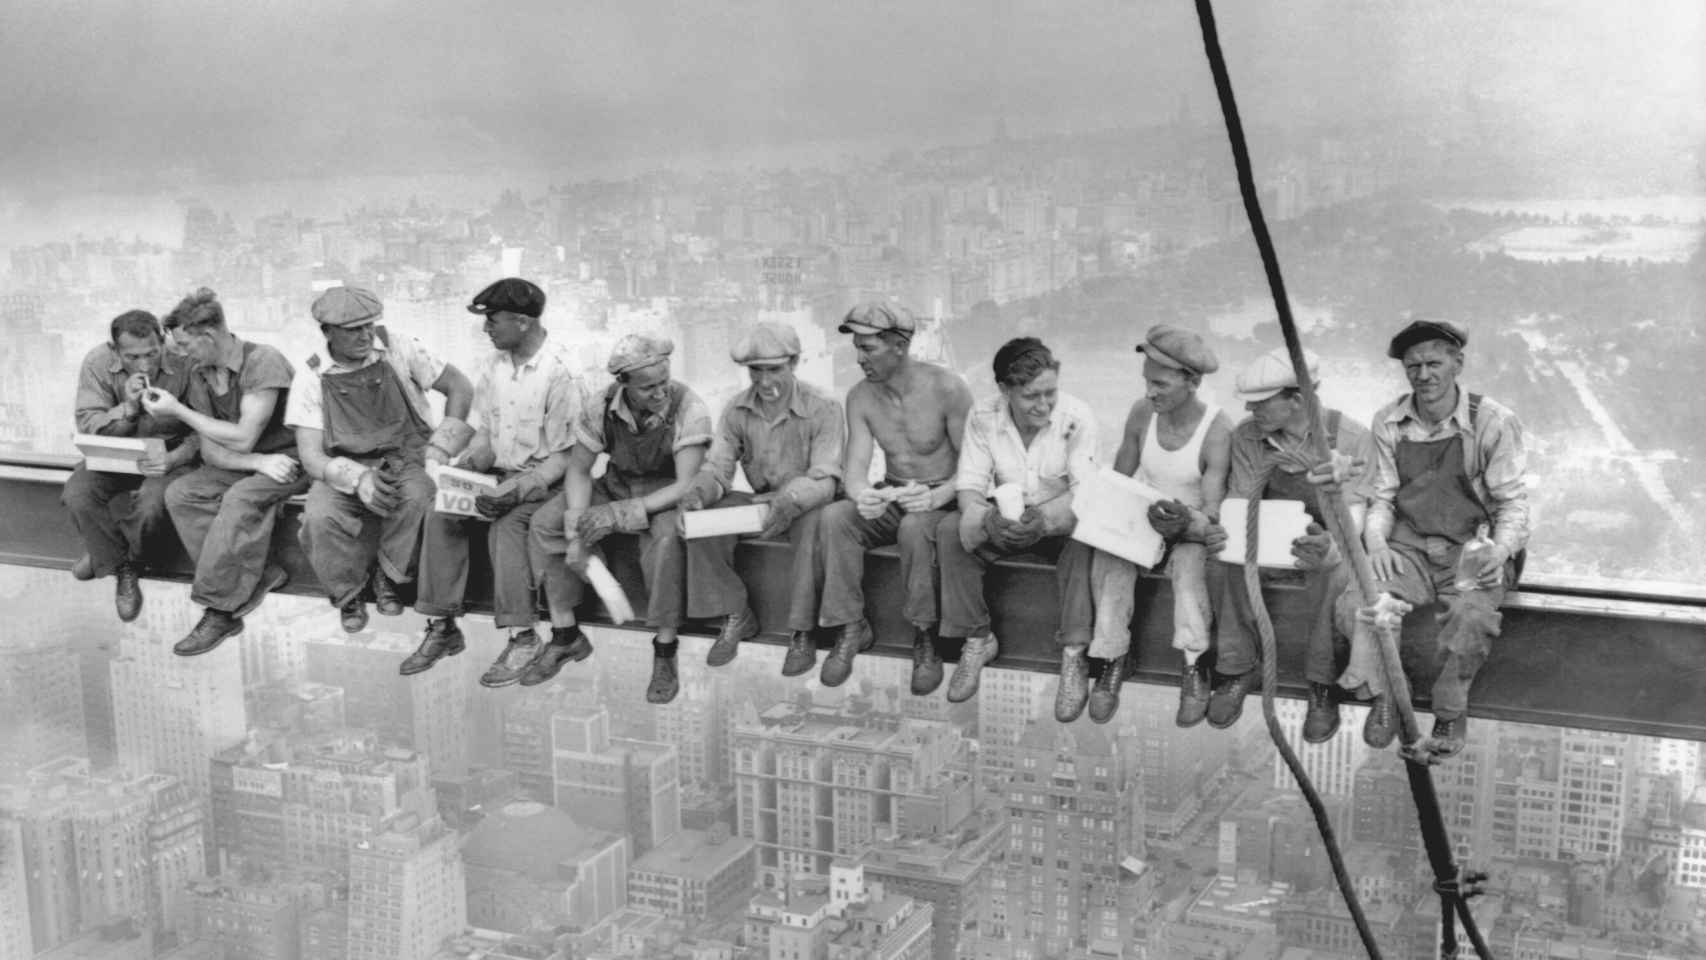 Una de las fotografías más famosas de la historia, realizada por Charles Ebbets: once obreros durante la construcción del Rockefeller Center en 1932.